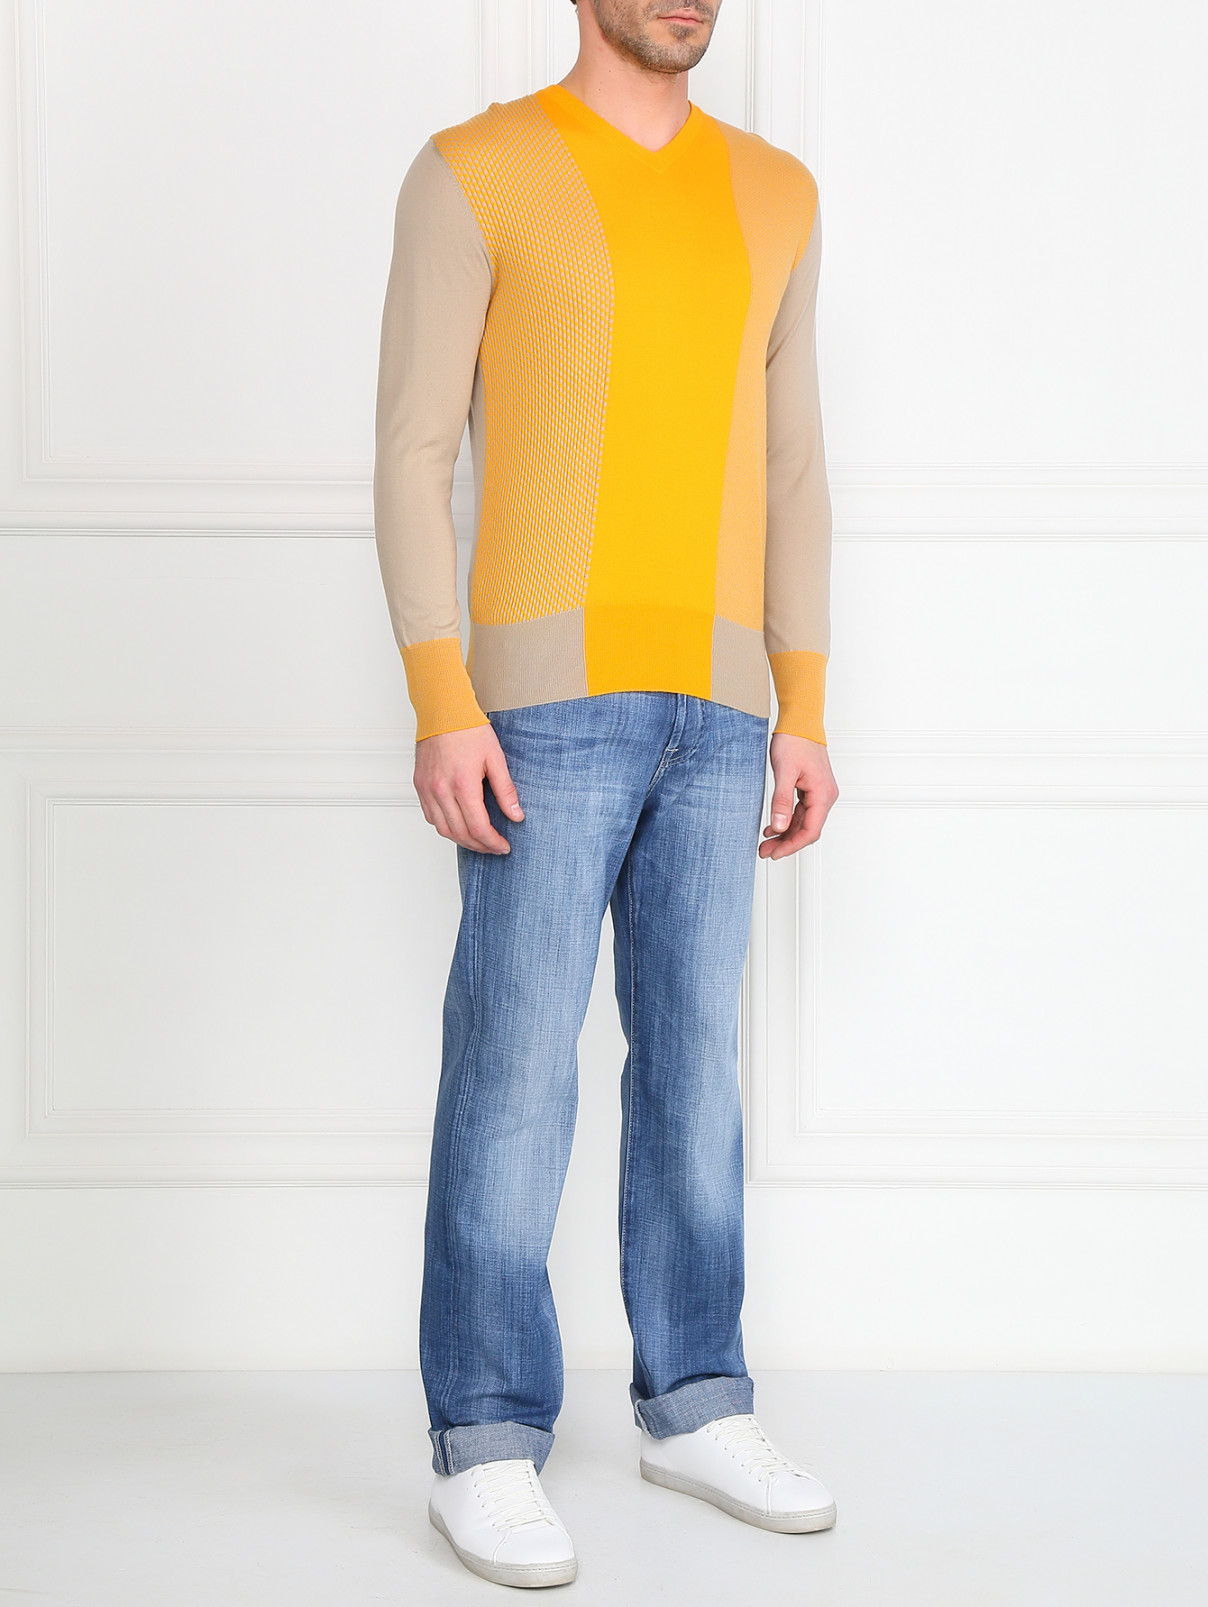 Пуловер из хлопка и кашемира с узором Etro  –  Модель Общий вид  – Цвет:  Желтый